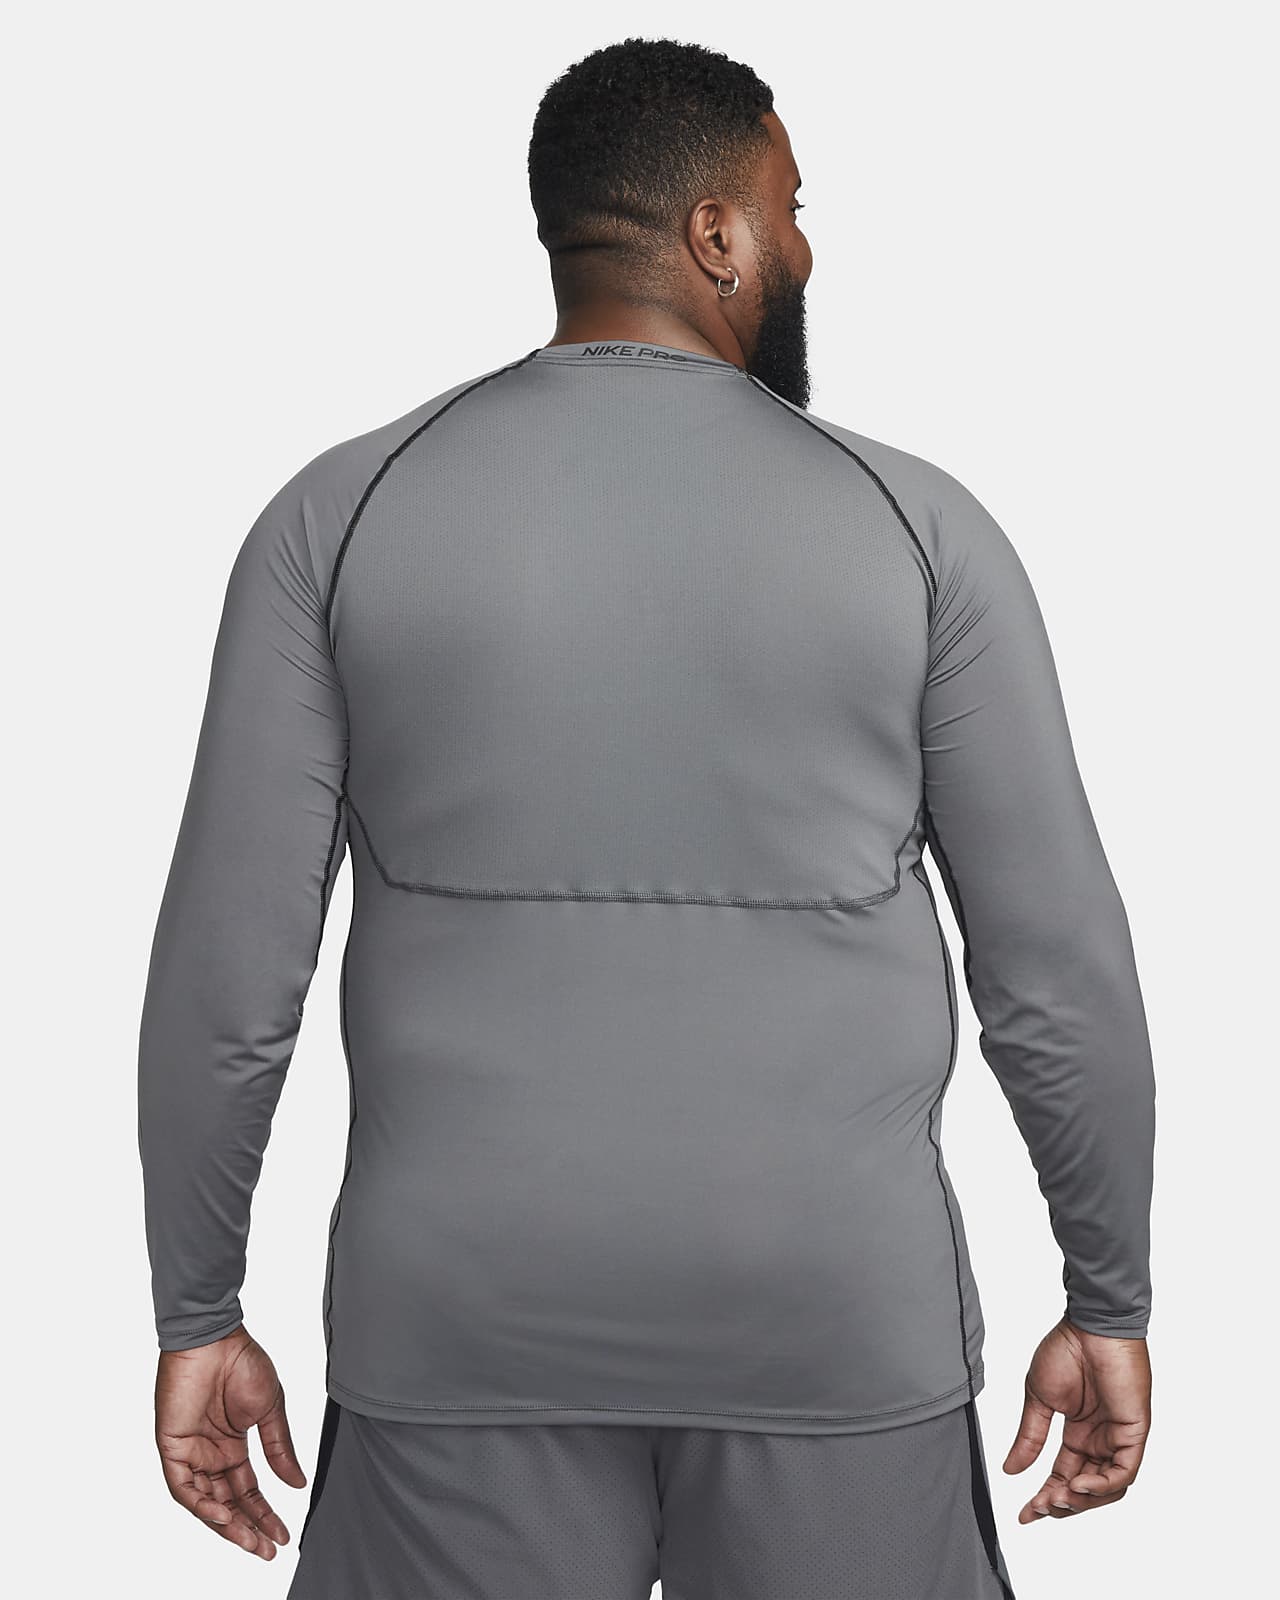 Nike Pro Long Sleeve Shirts.